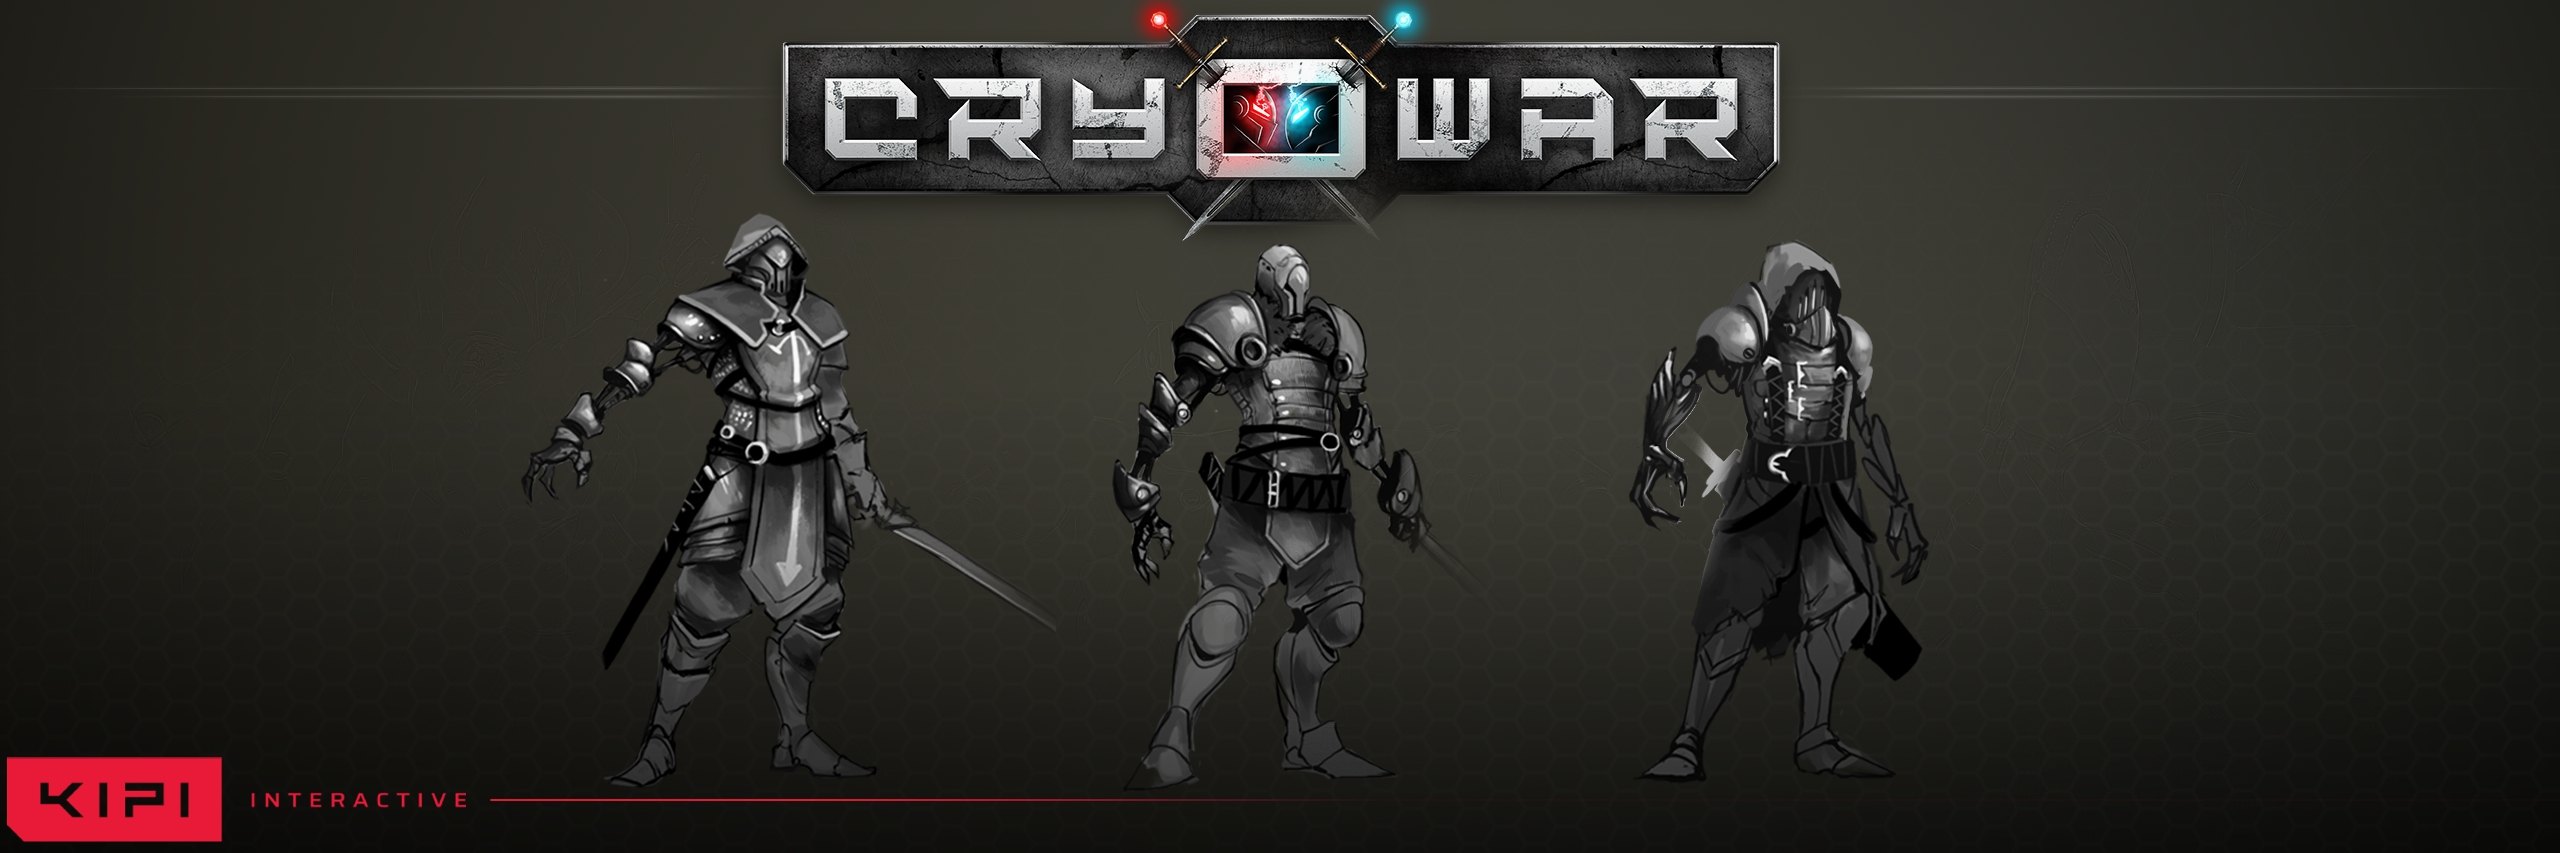 Cryowar Concept Art Header